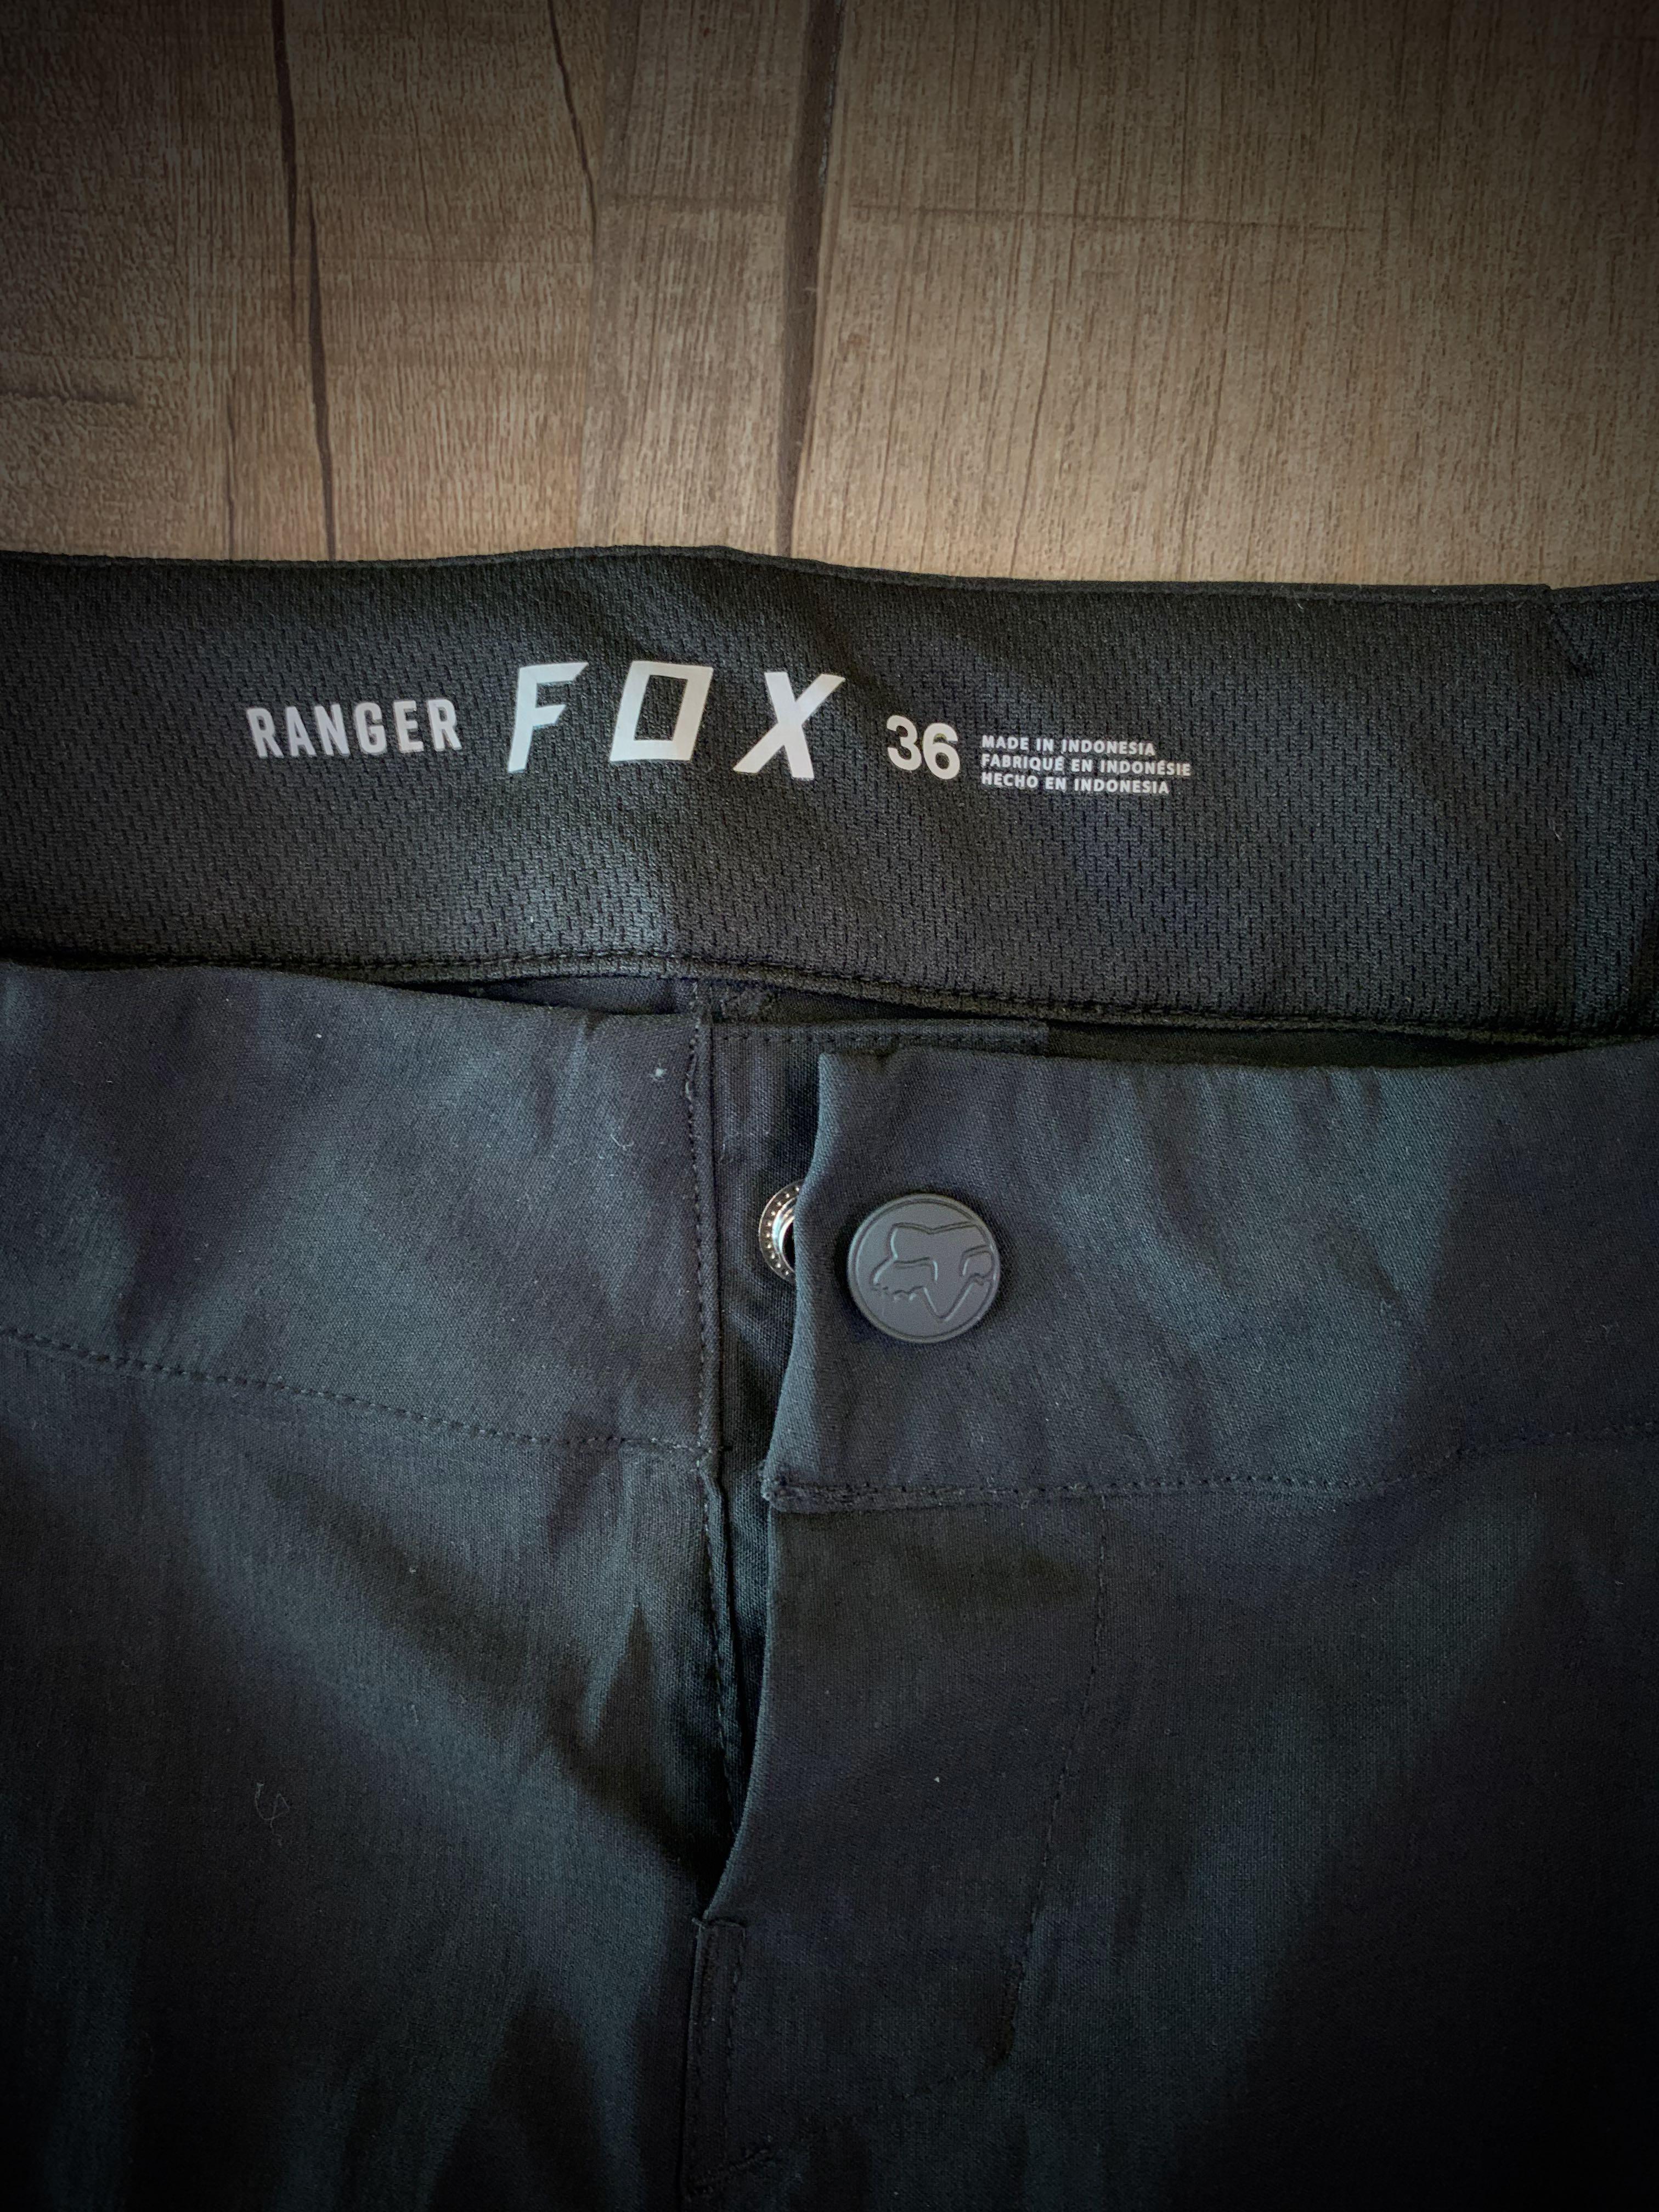 Fox Racing Flexair Pant - Michael's Bicycles | Newbury Park, CA